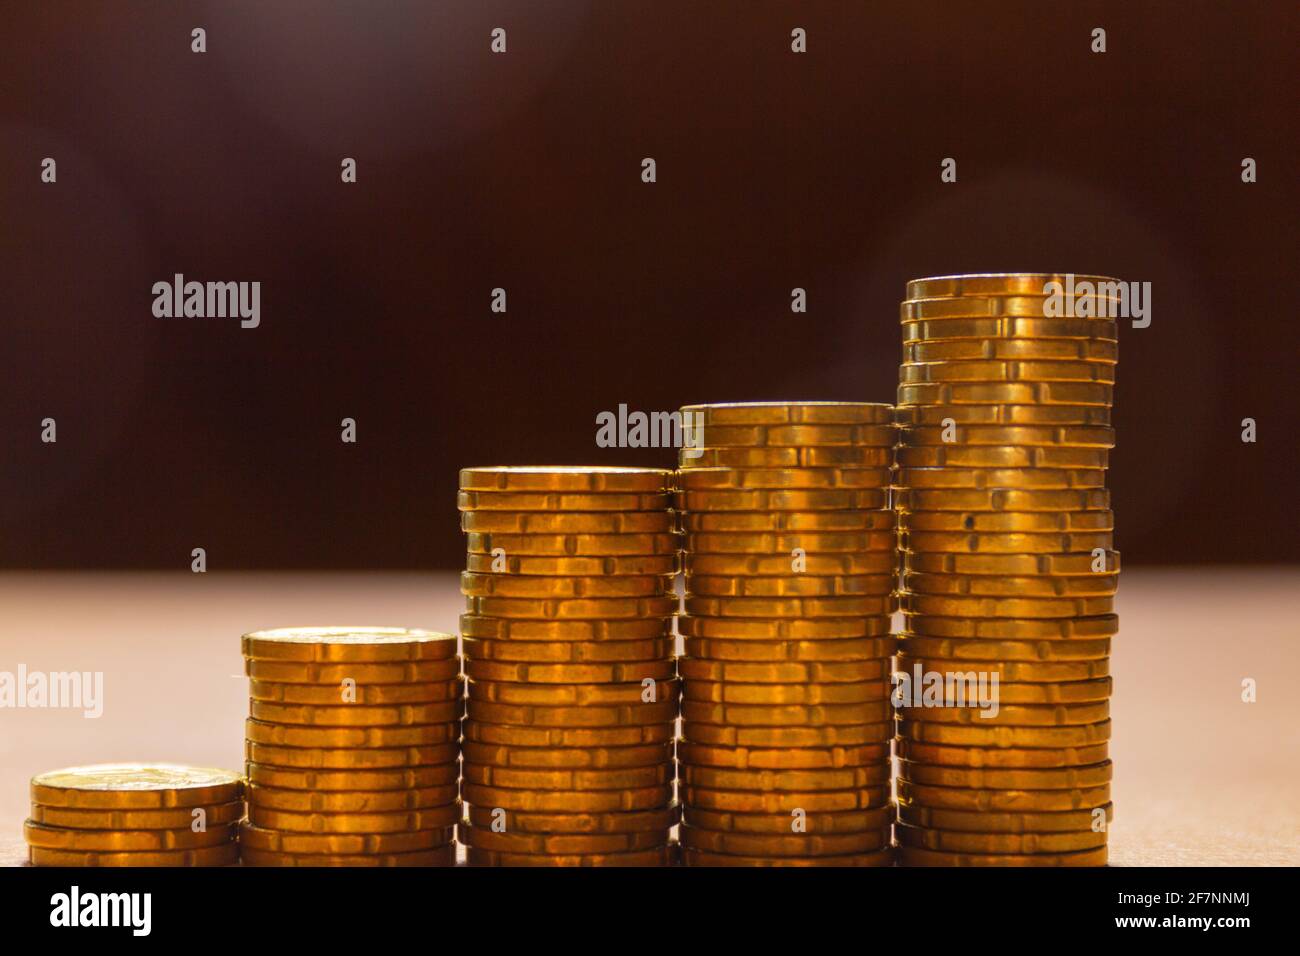 5 piles de pièces sur une table dans une disposition graphique. Bannière de concept d'économie d'argent Banque D'Images